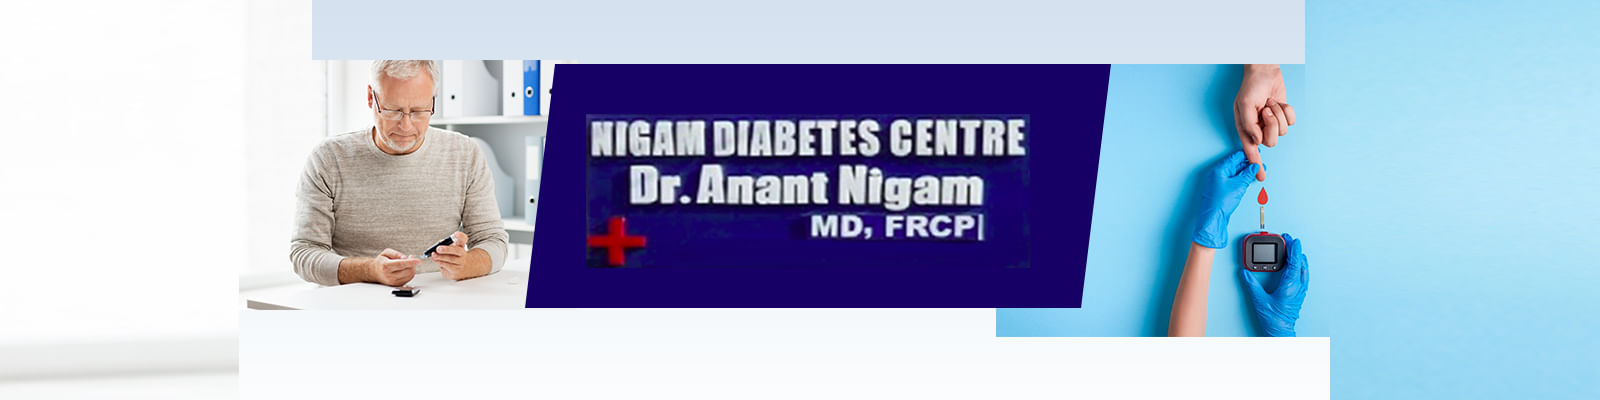 Nigam Diabetes Centre